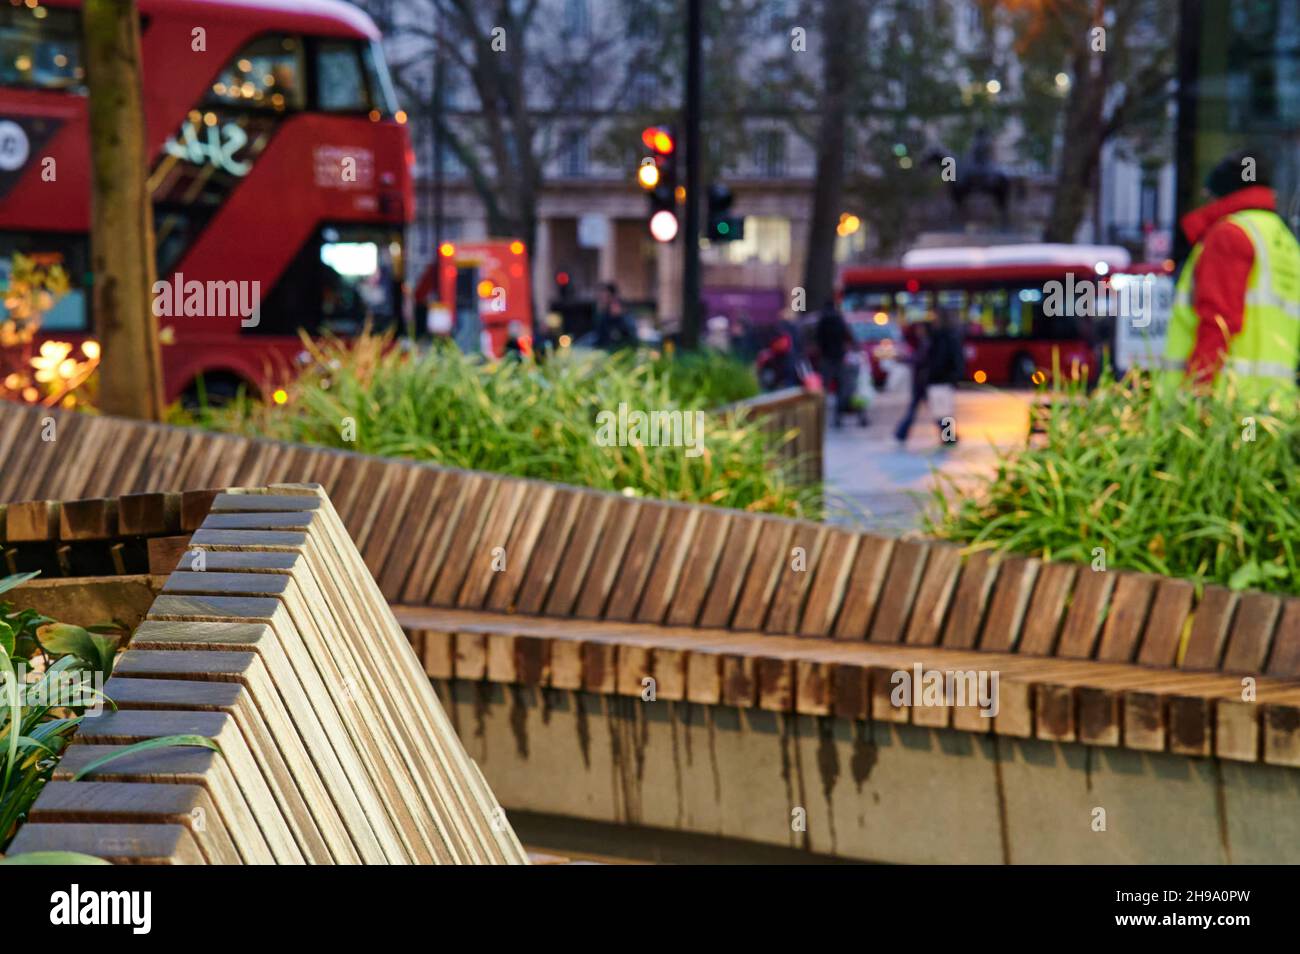 Scène de rue au crépuscule de Londres avec un arrière-plan flou avec bus de londres, piétons, plantes et sièges en bois. Aucune marque visible. Banque D'Images